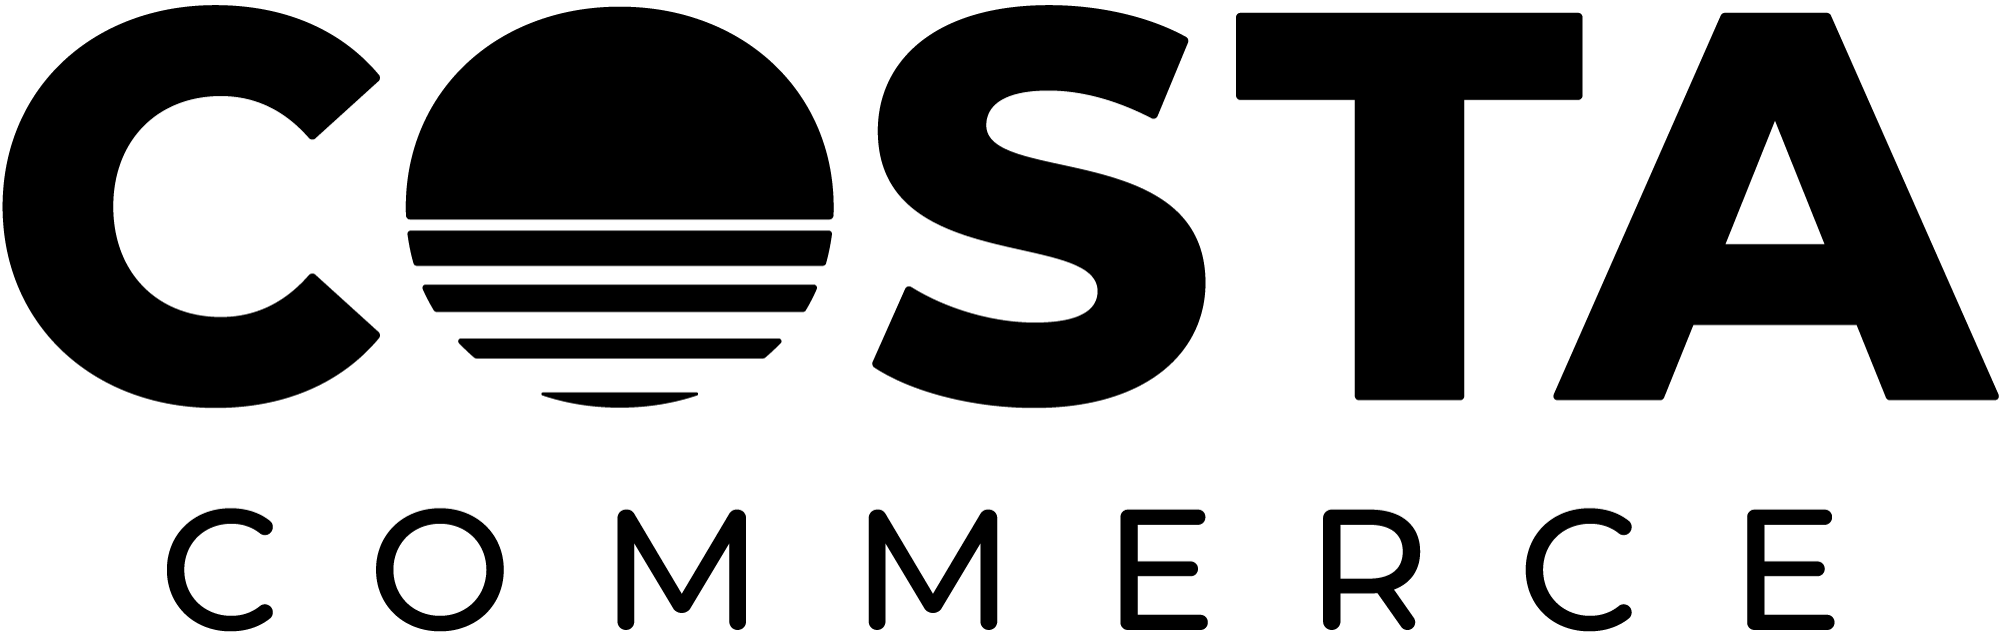 CC-logo-black-RGB